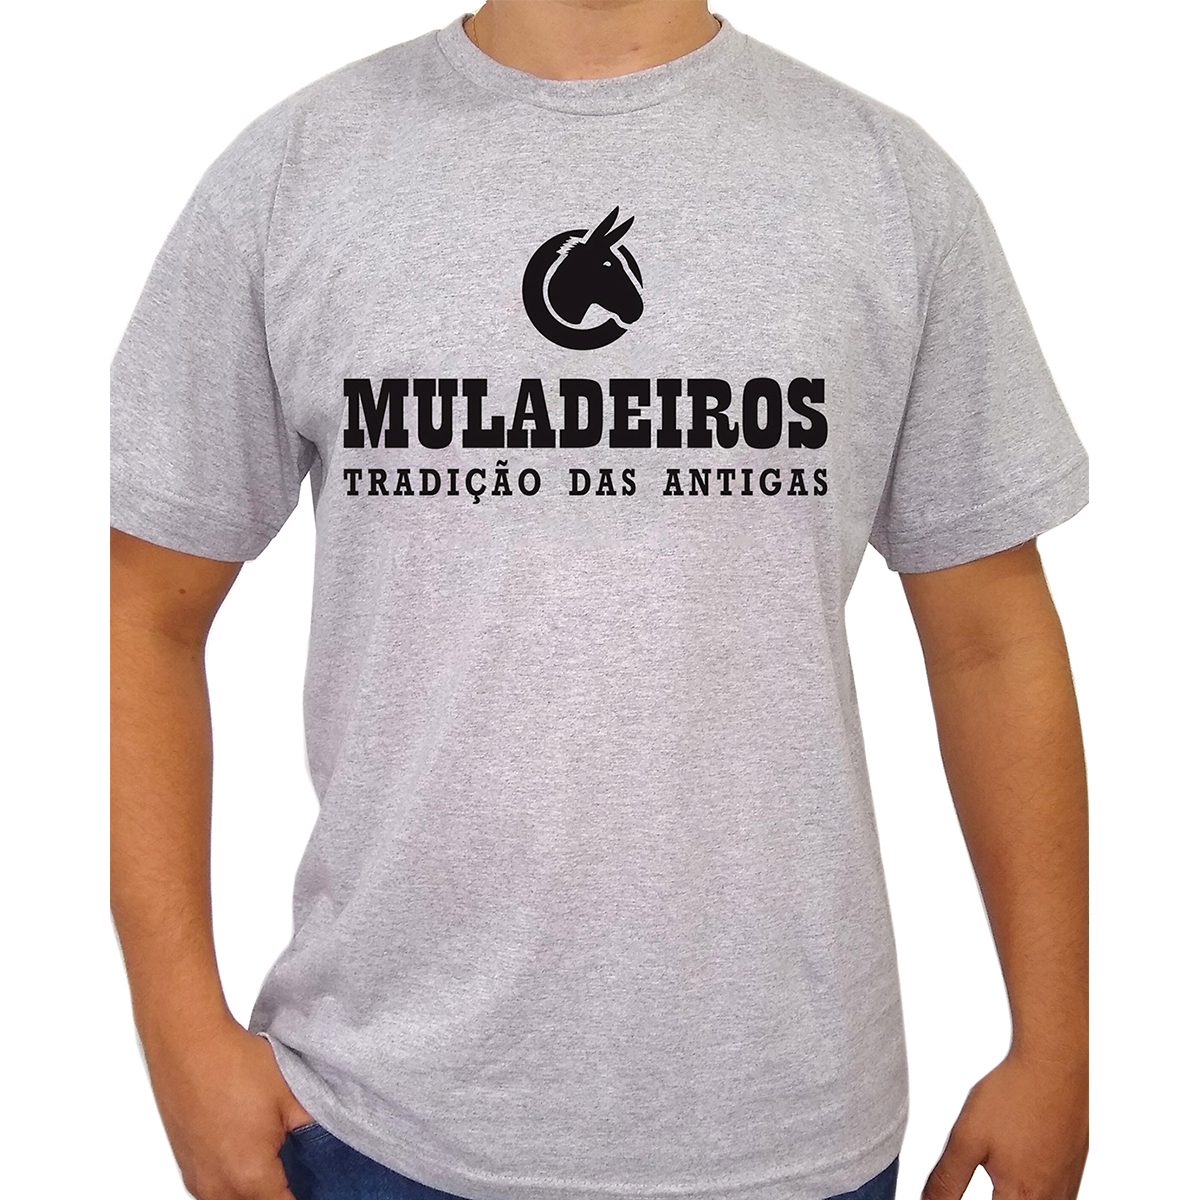 Camiseta Muladeiros Masculina - Variedade em produtos Sertanejos. Chapéus,  Lenços e Vestuários.